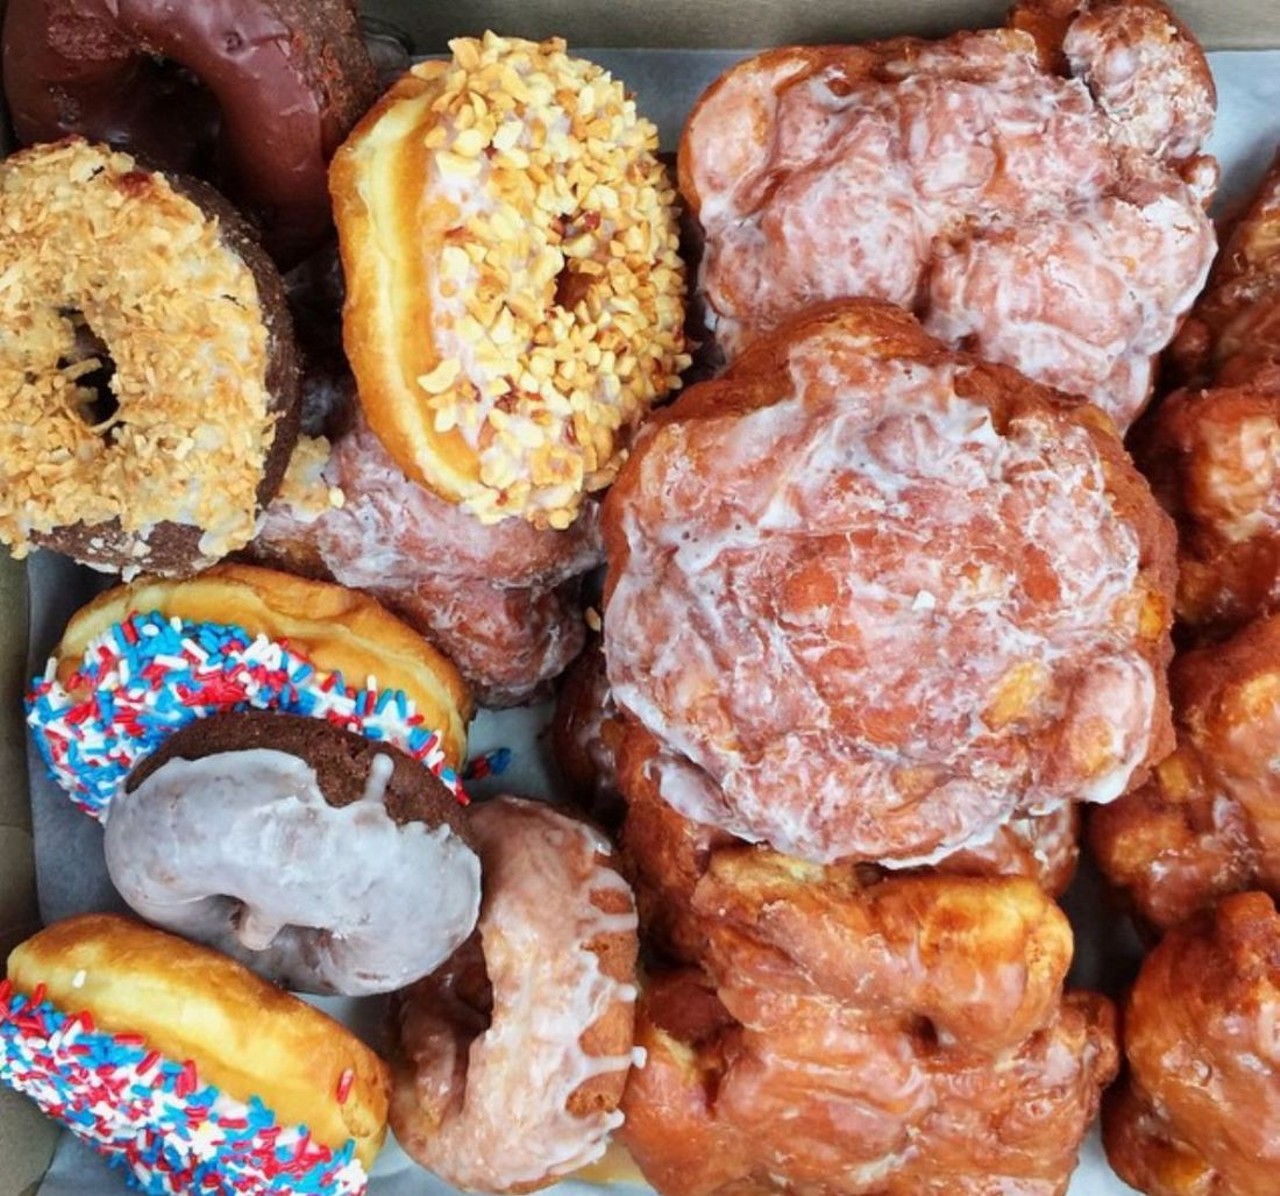 Best Bakery
Apple Fritter Donut Shop, 741 E. Nine Mile Rd., 407-897-3488
facebook.com/fritterman/ 
Photo via chowdowndetroit/Instagram